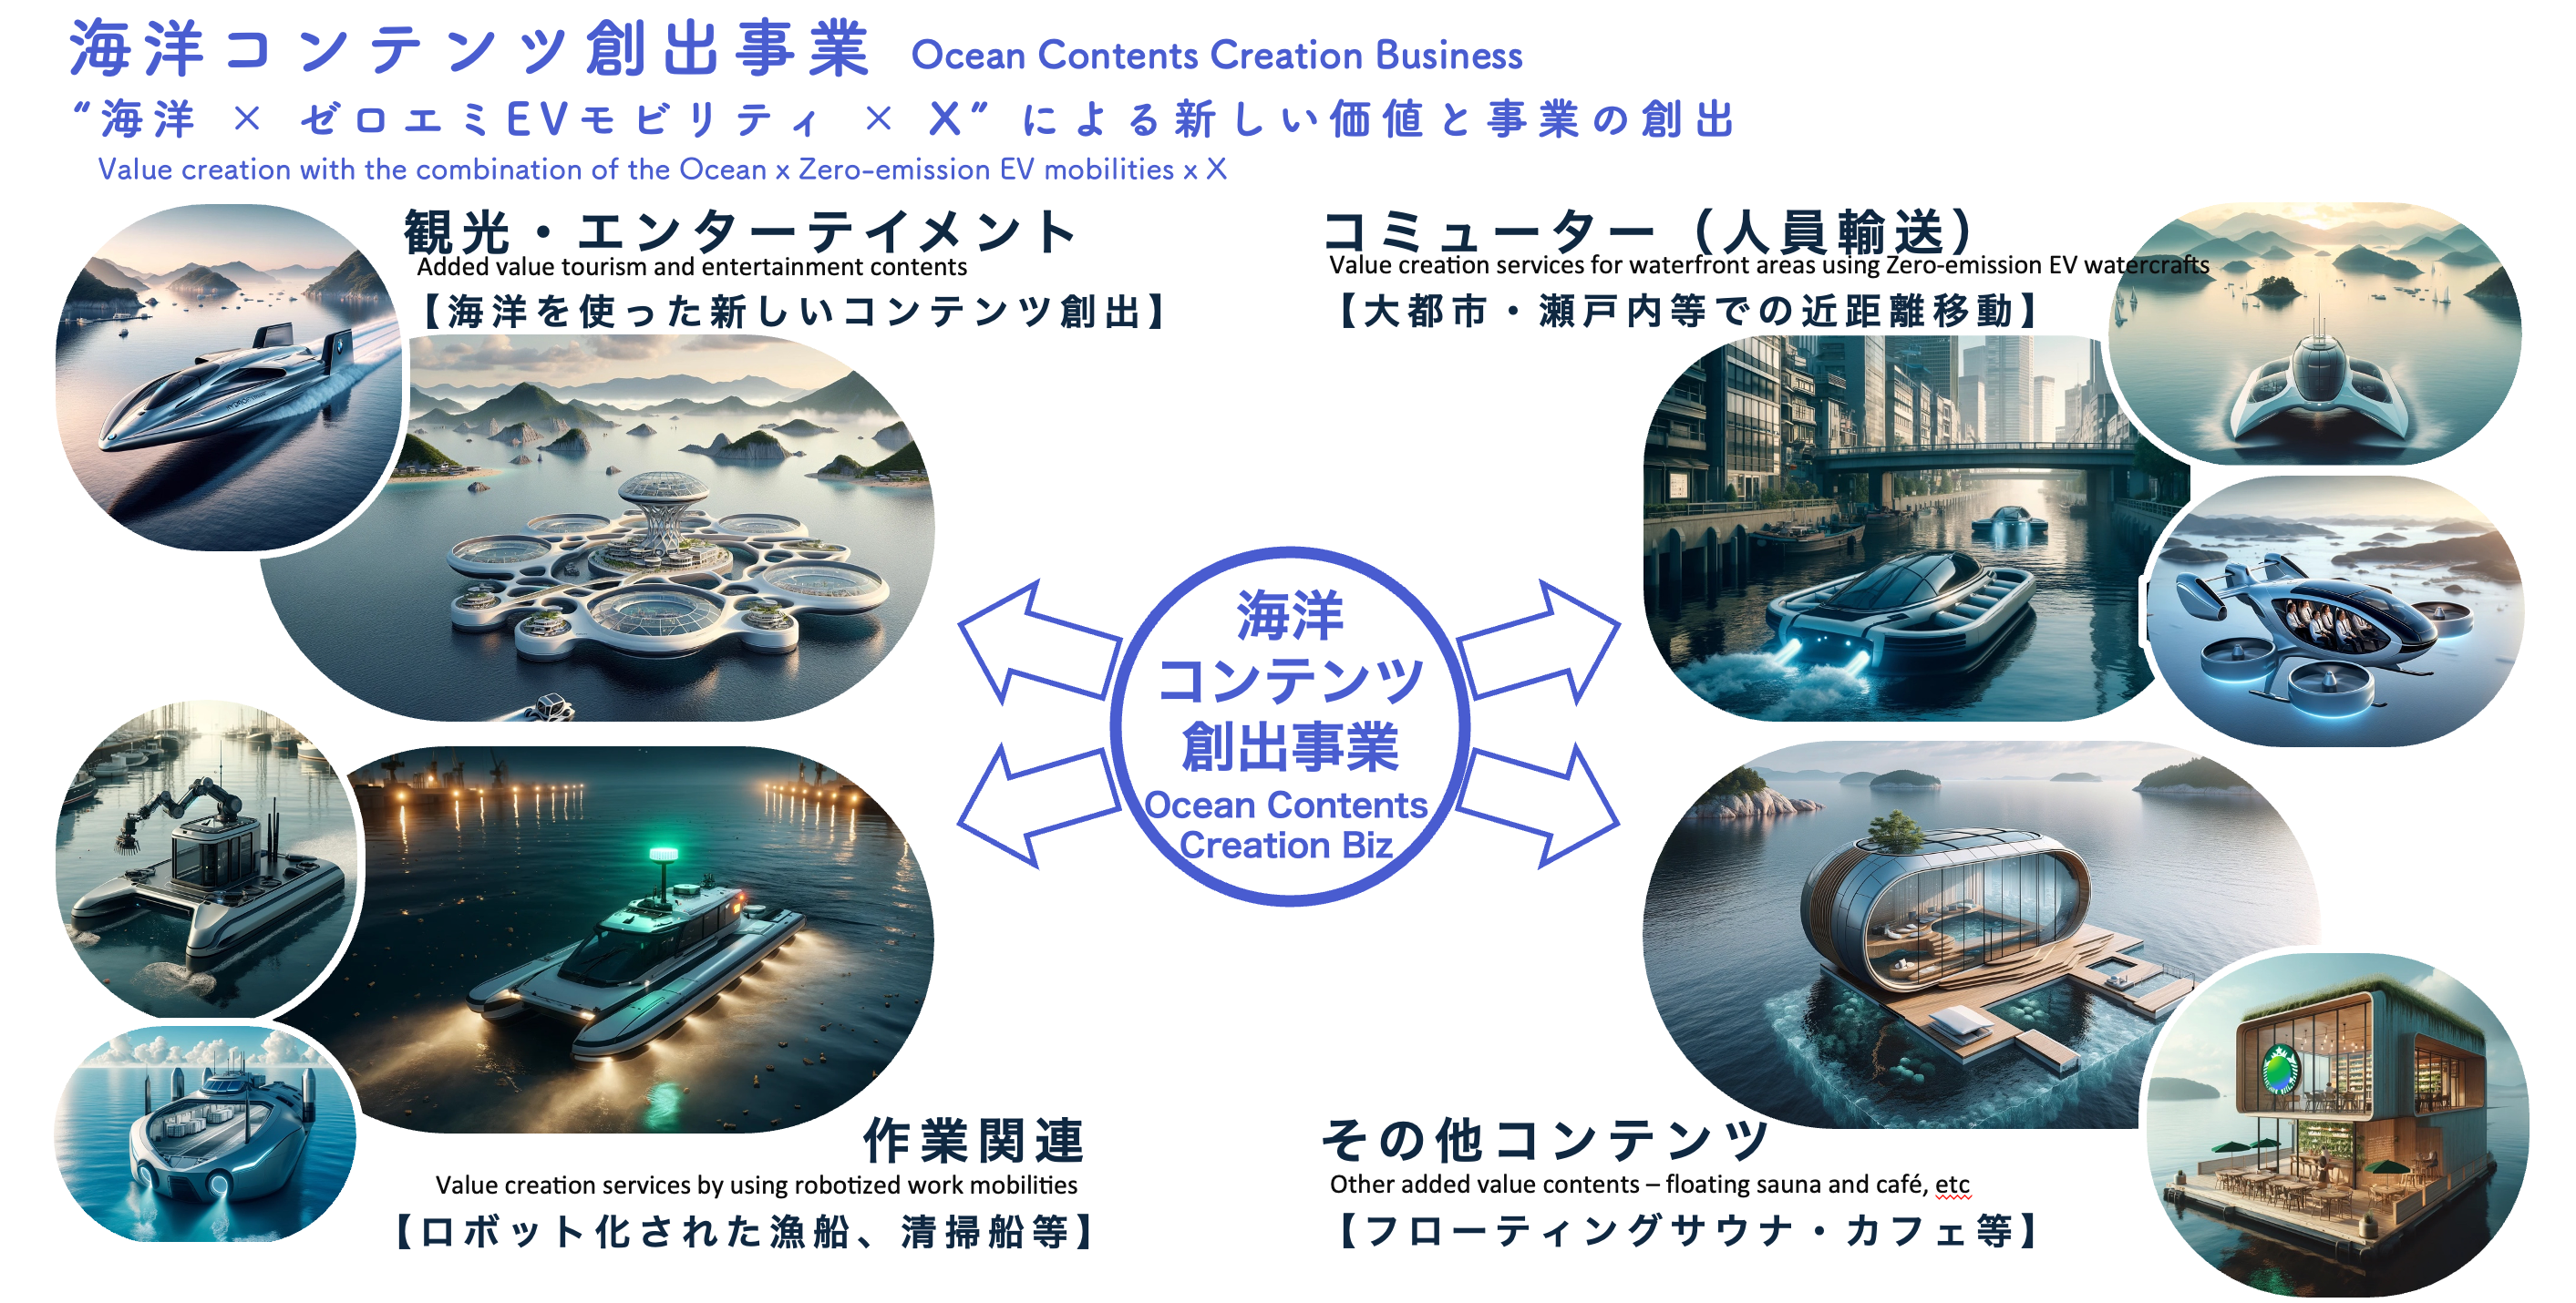 日本向けロボットEV貨物船を共同開発し連続建造へ。海洋新価値創出プロデューサー集団「THUNDERBIRDS」、中国...